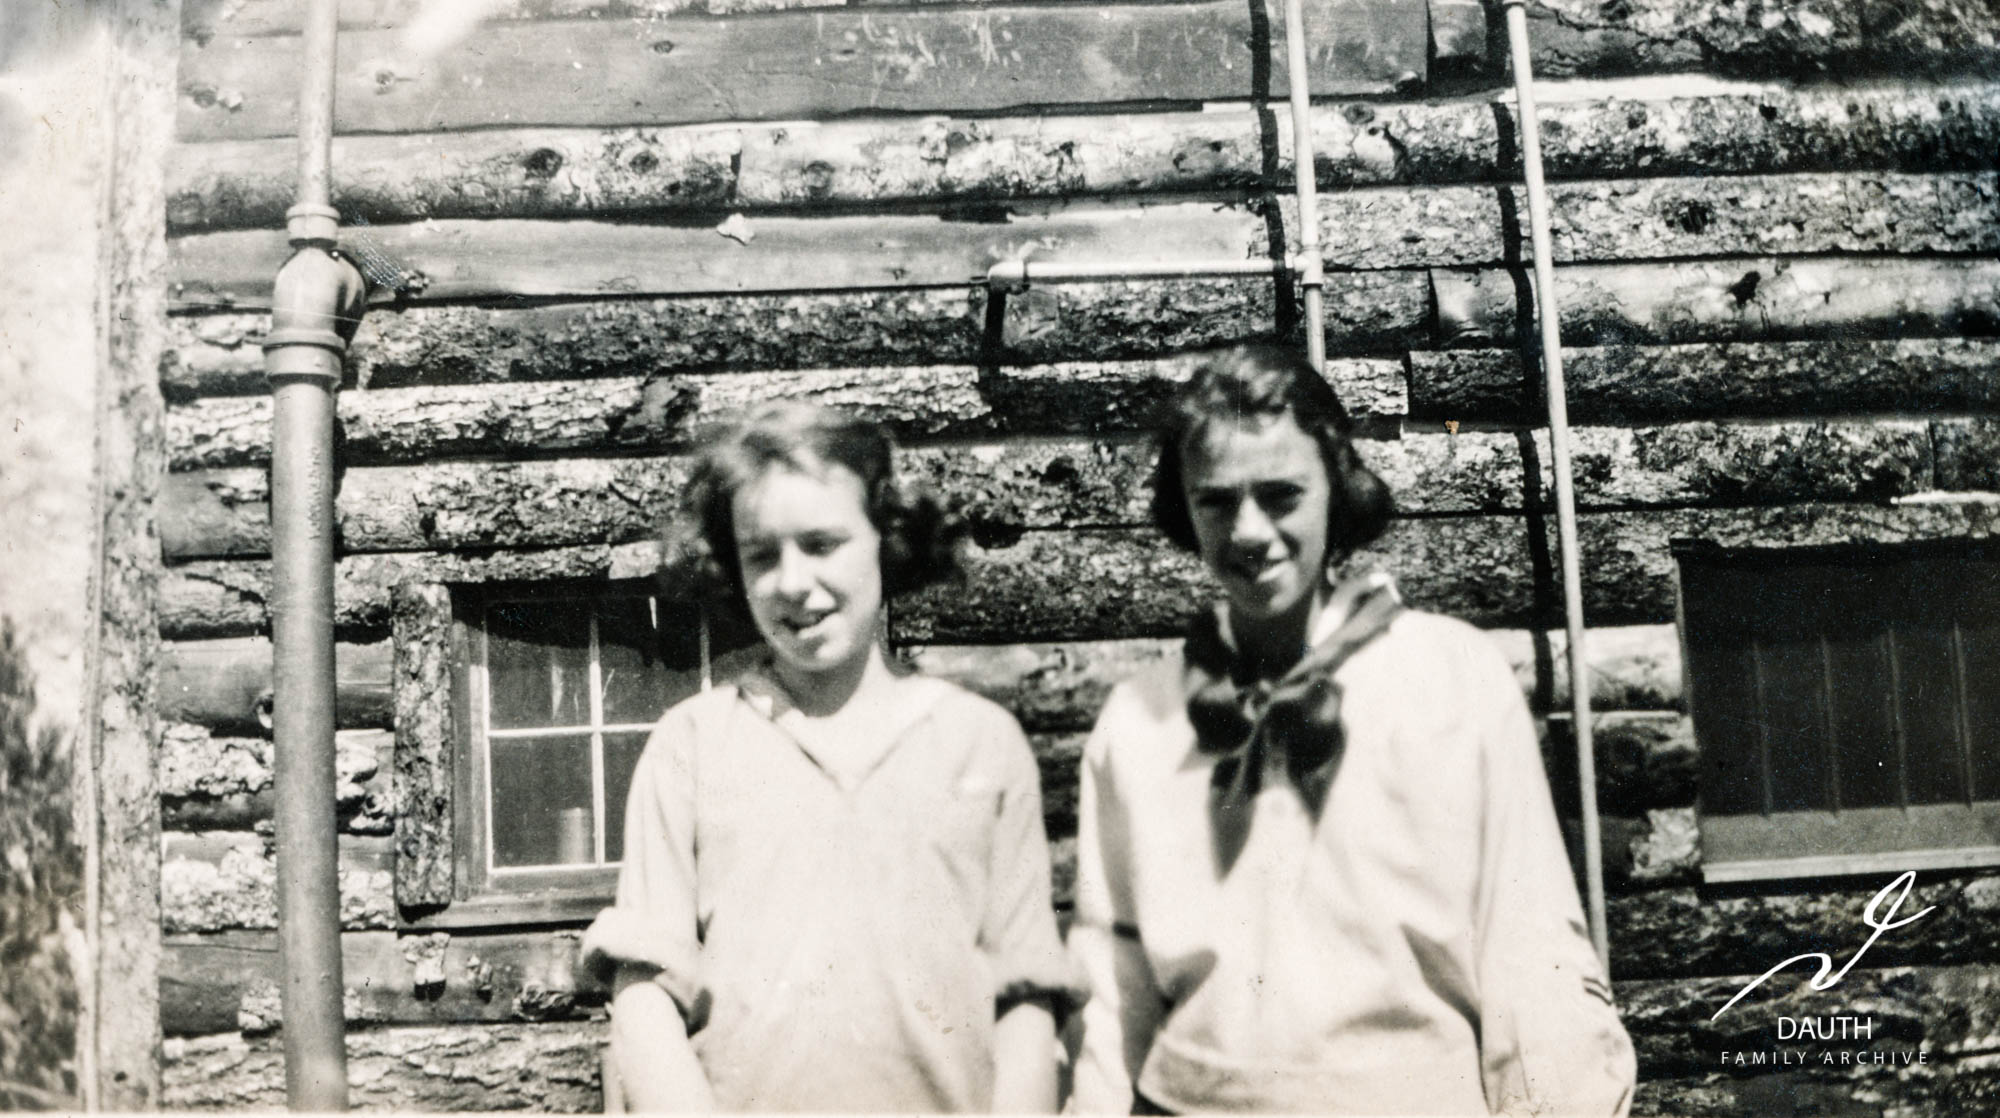 Idlewild Lodge - idlewildlodge.github.io - 1921 - Elizabeth Dauth and Elizabeth Jones at Idlewild Lodge